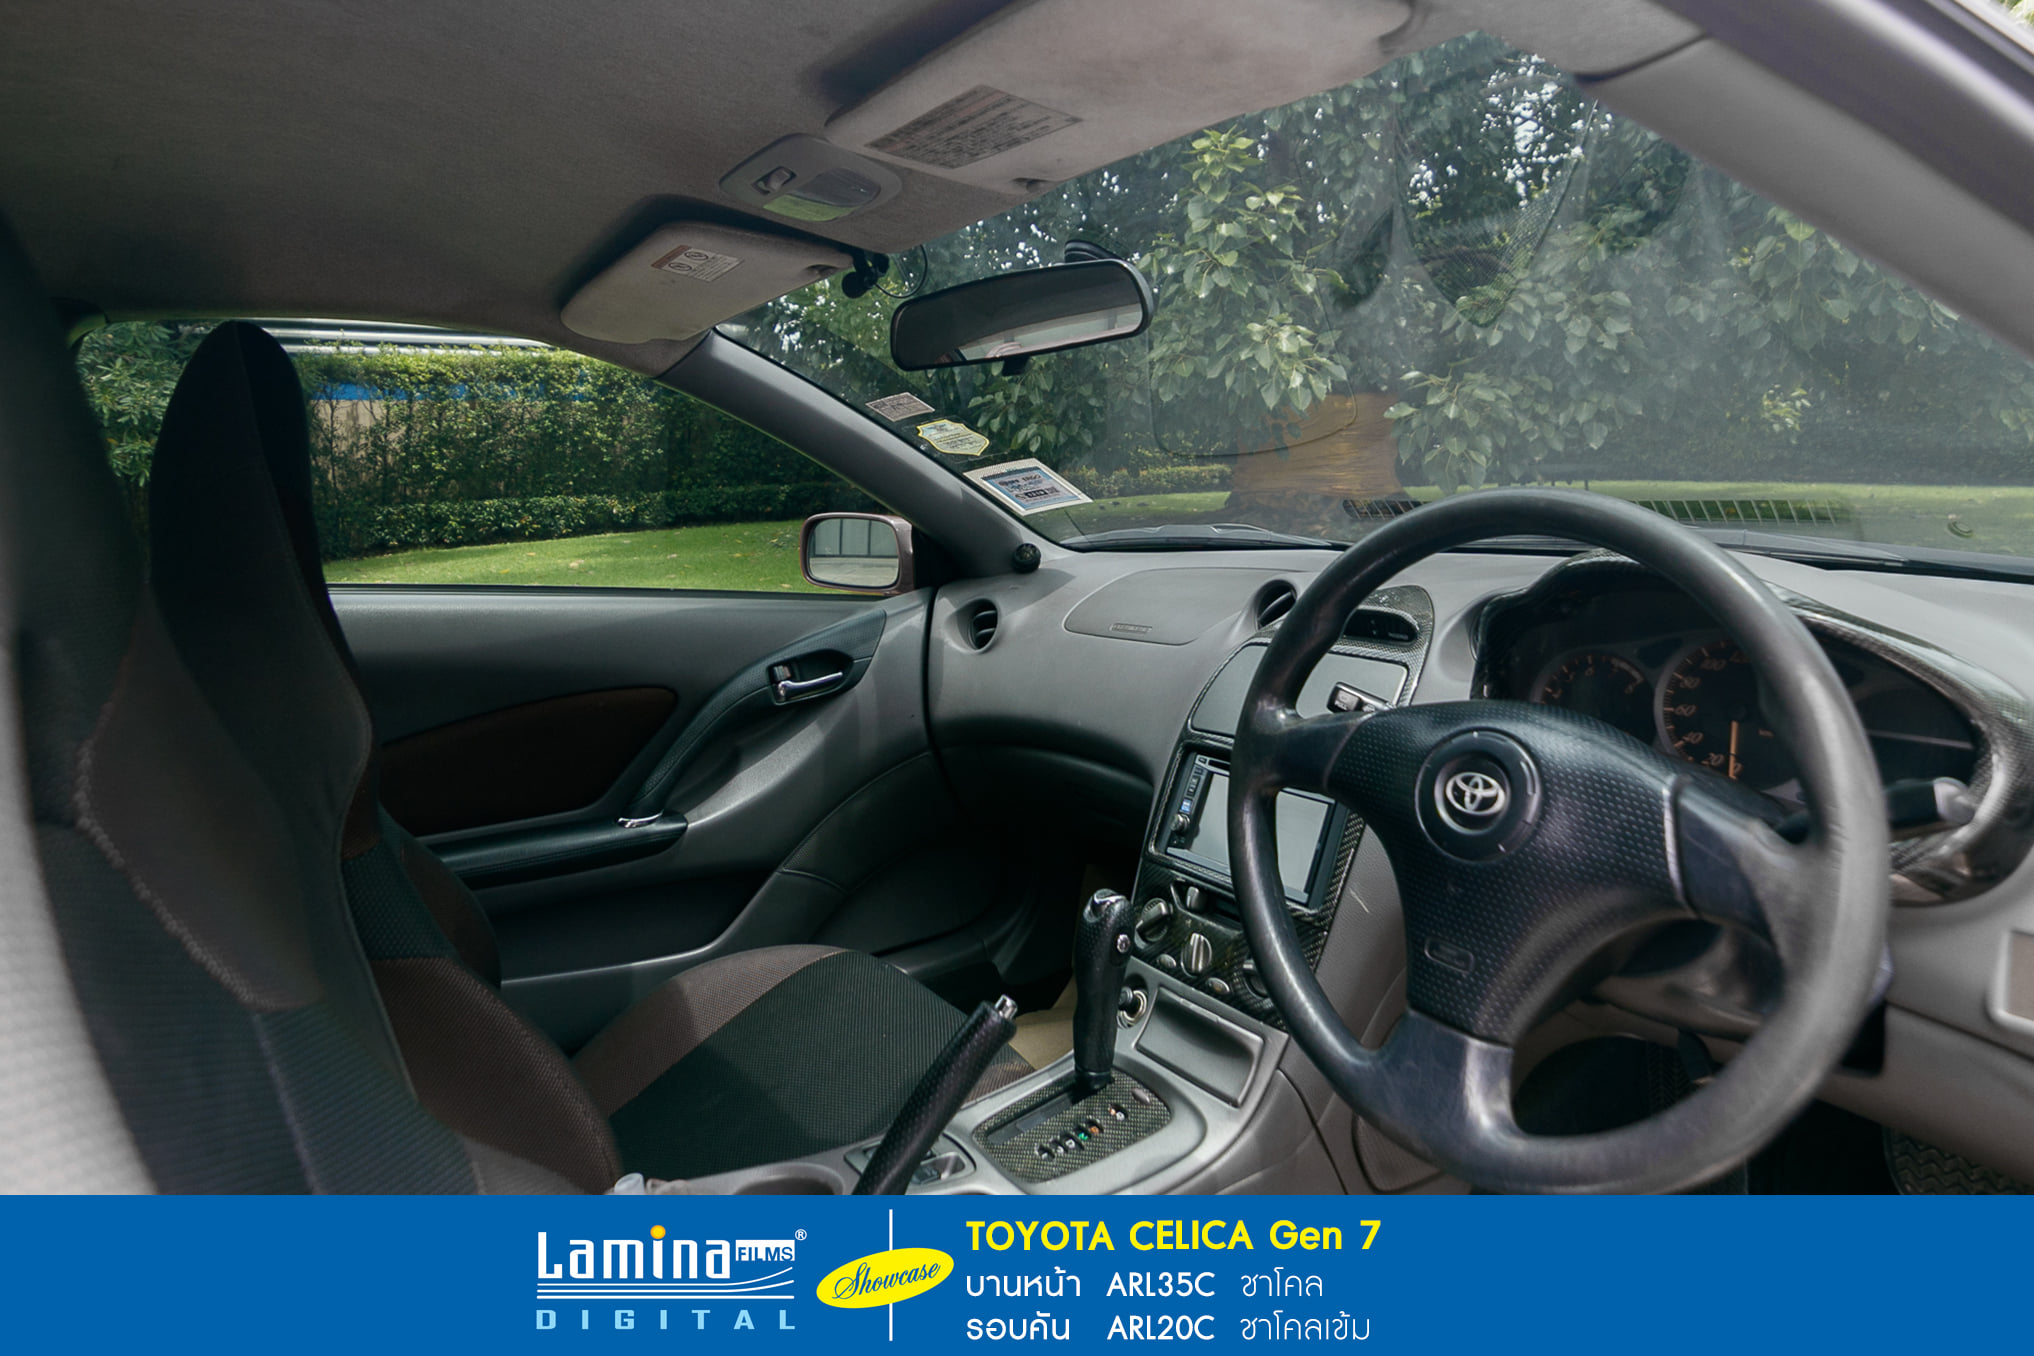 ฟิล์มดำ ฟิล์มสีชา lamina executive series Toyota Celica Gan 7 6